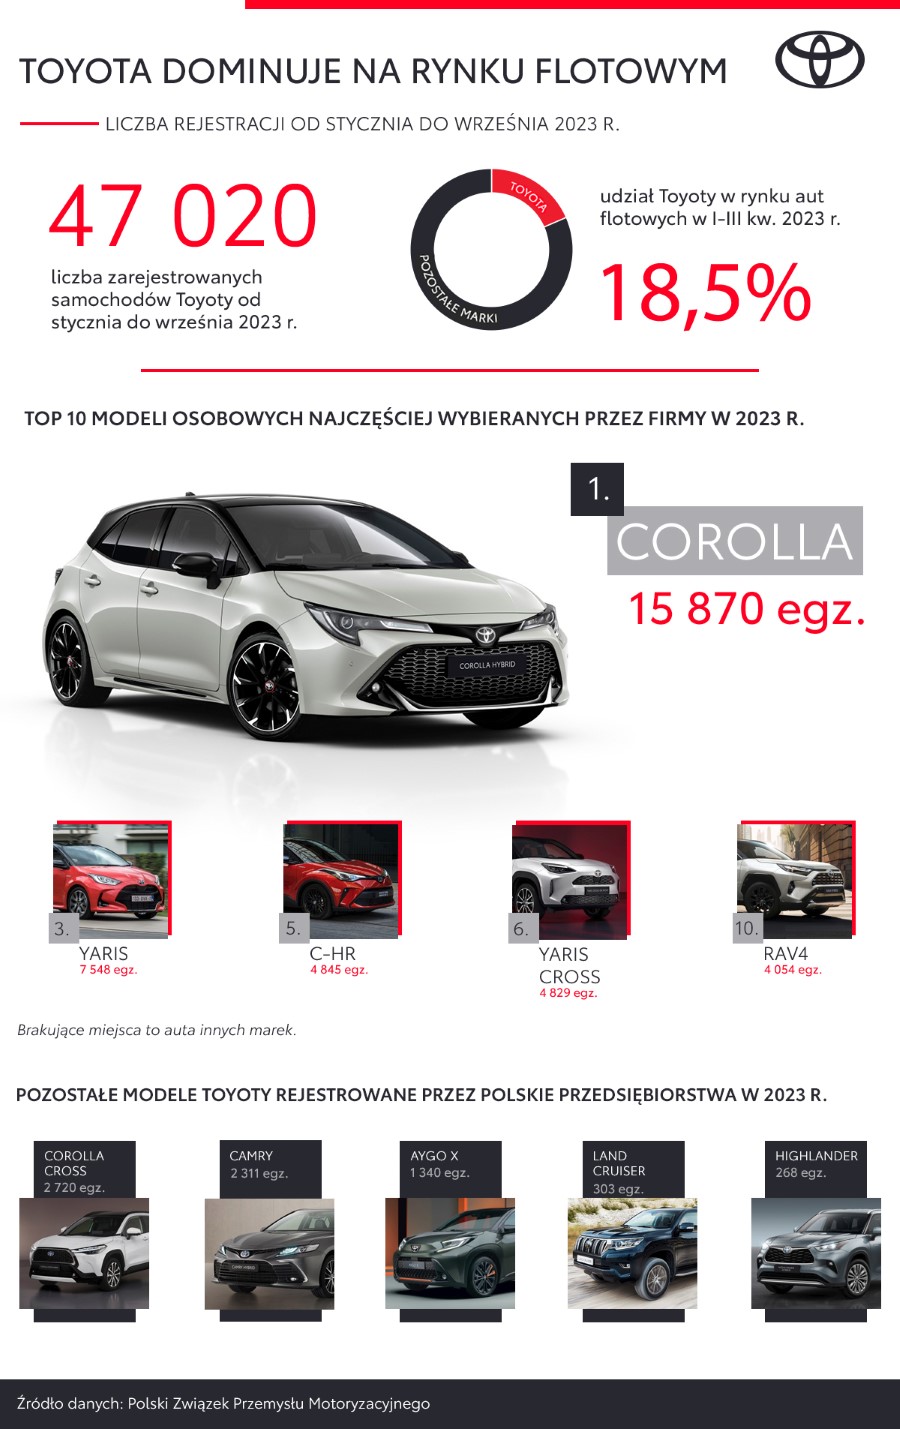 Toyota najczęściej wybieraną marką przez polskie firmy. Dane po dziewięciu miesiącach 2023 roku